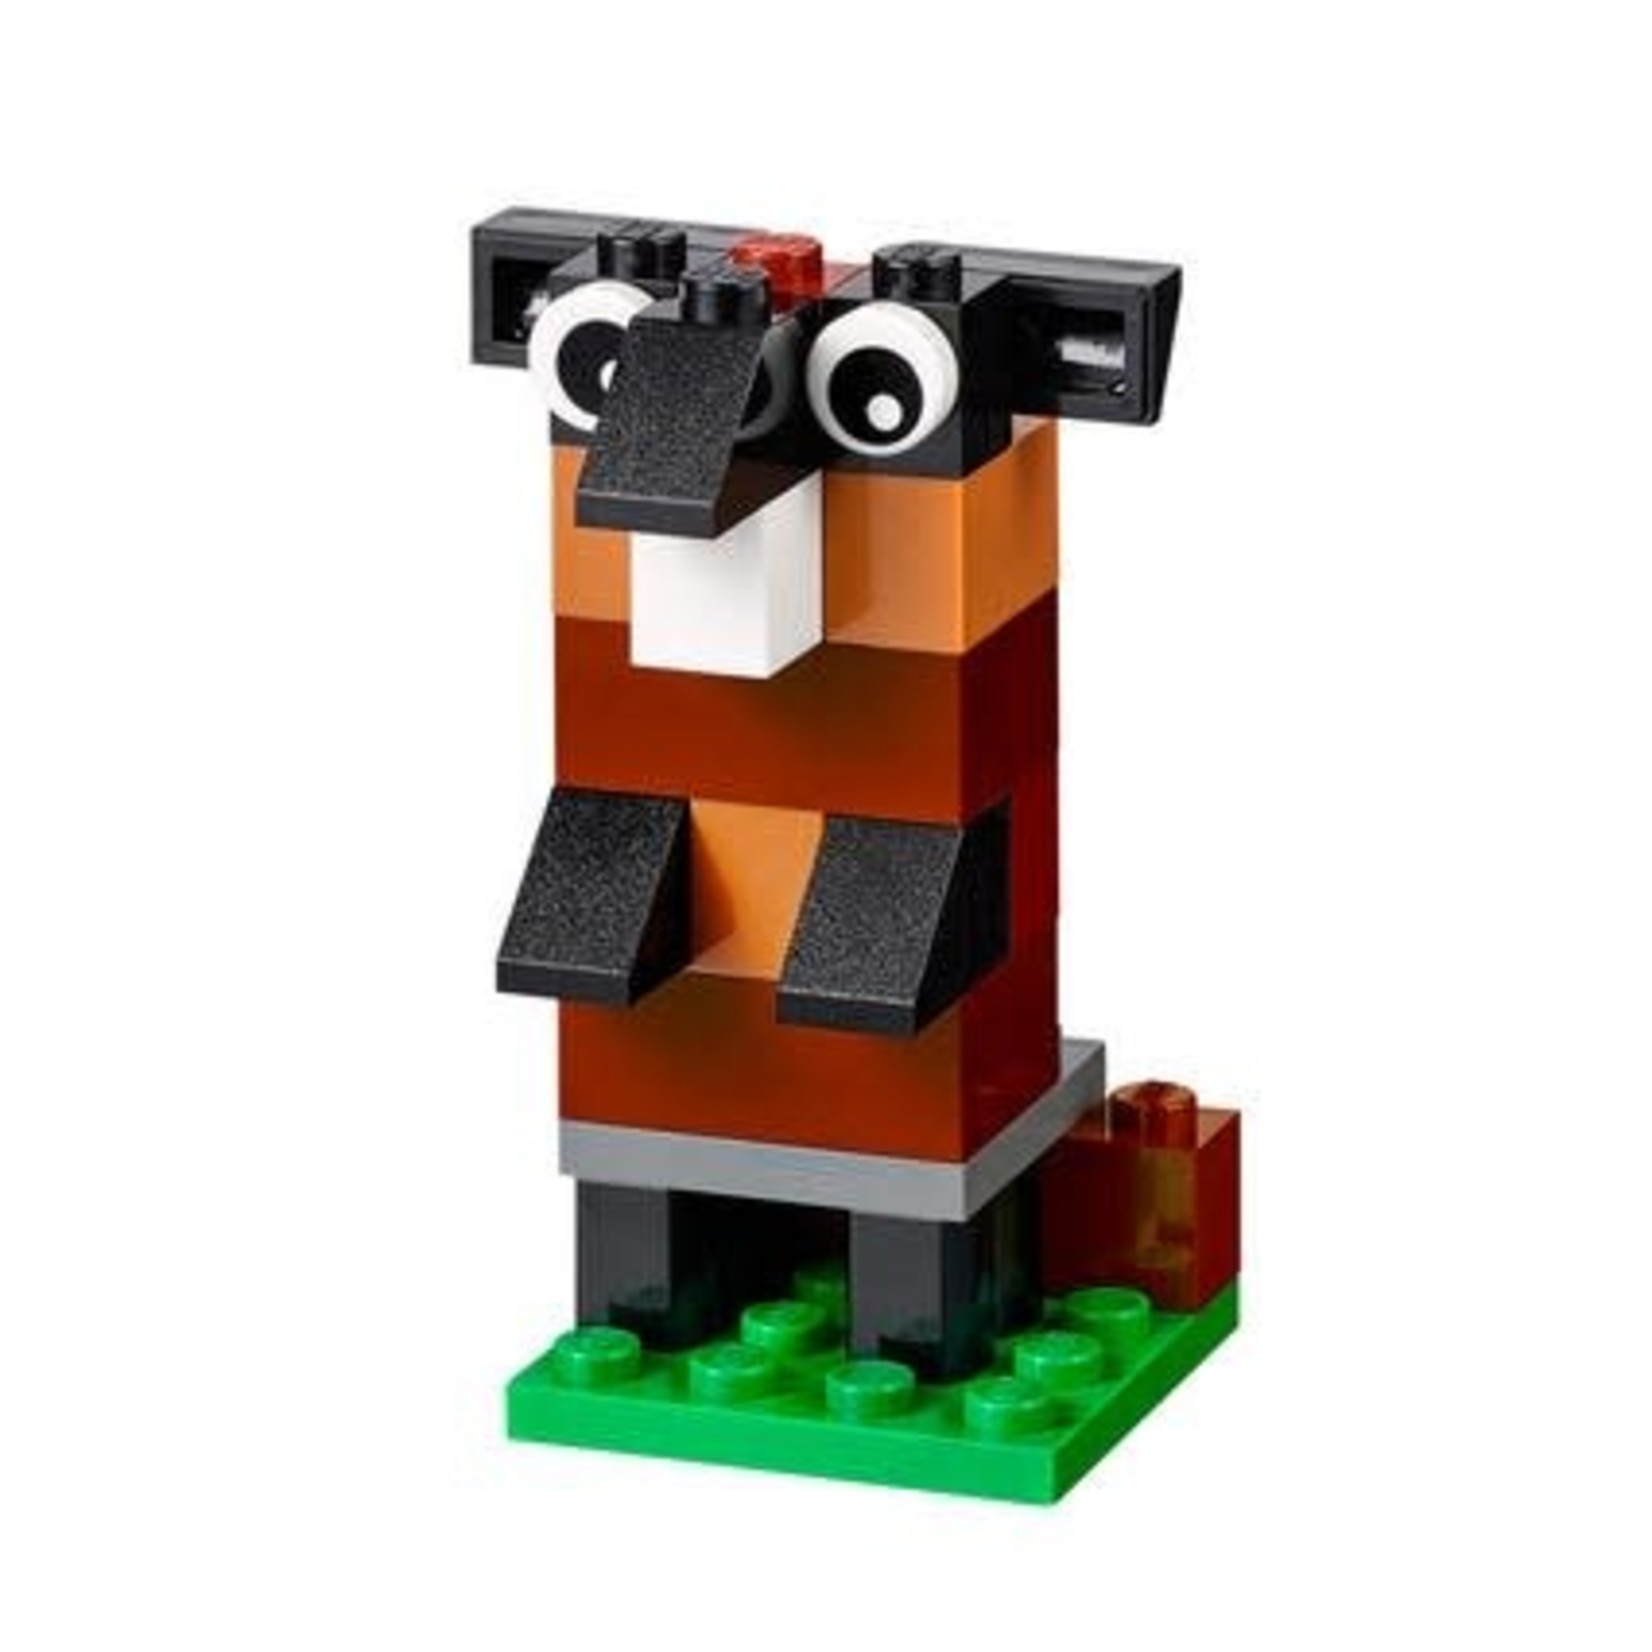 Grande boîte de briques créative LEGO Classic — Juguetesland